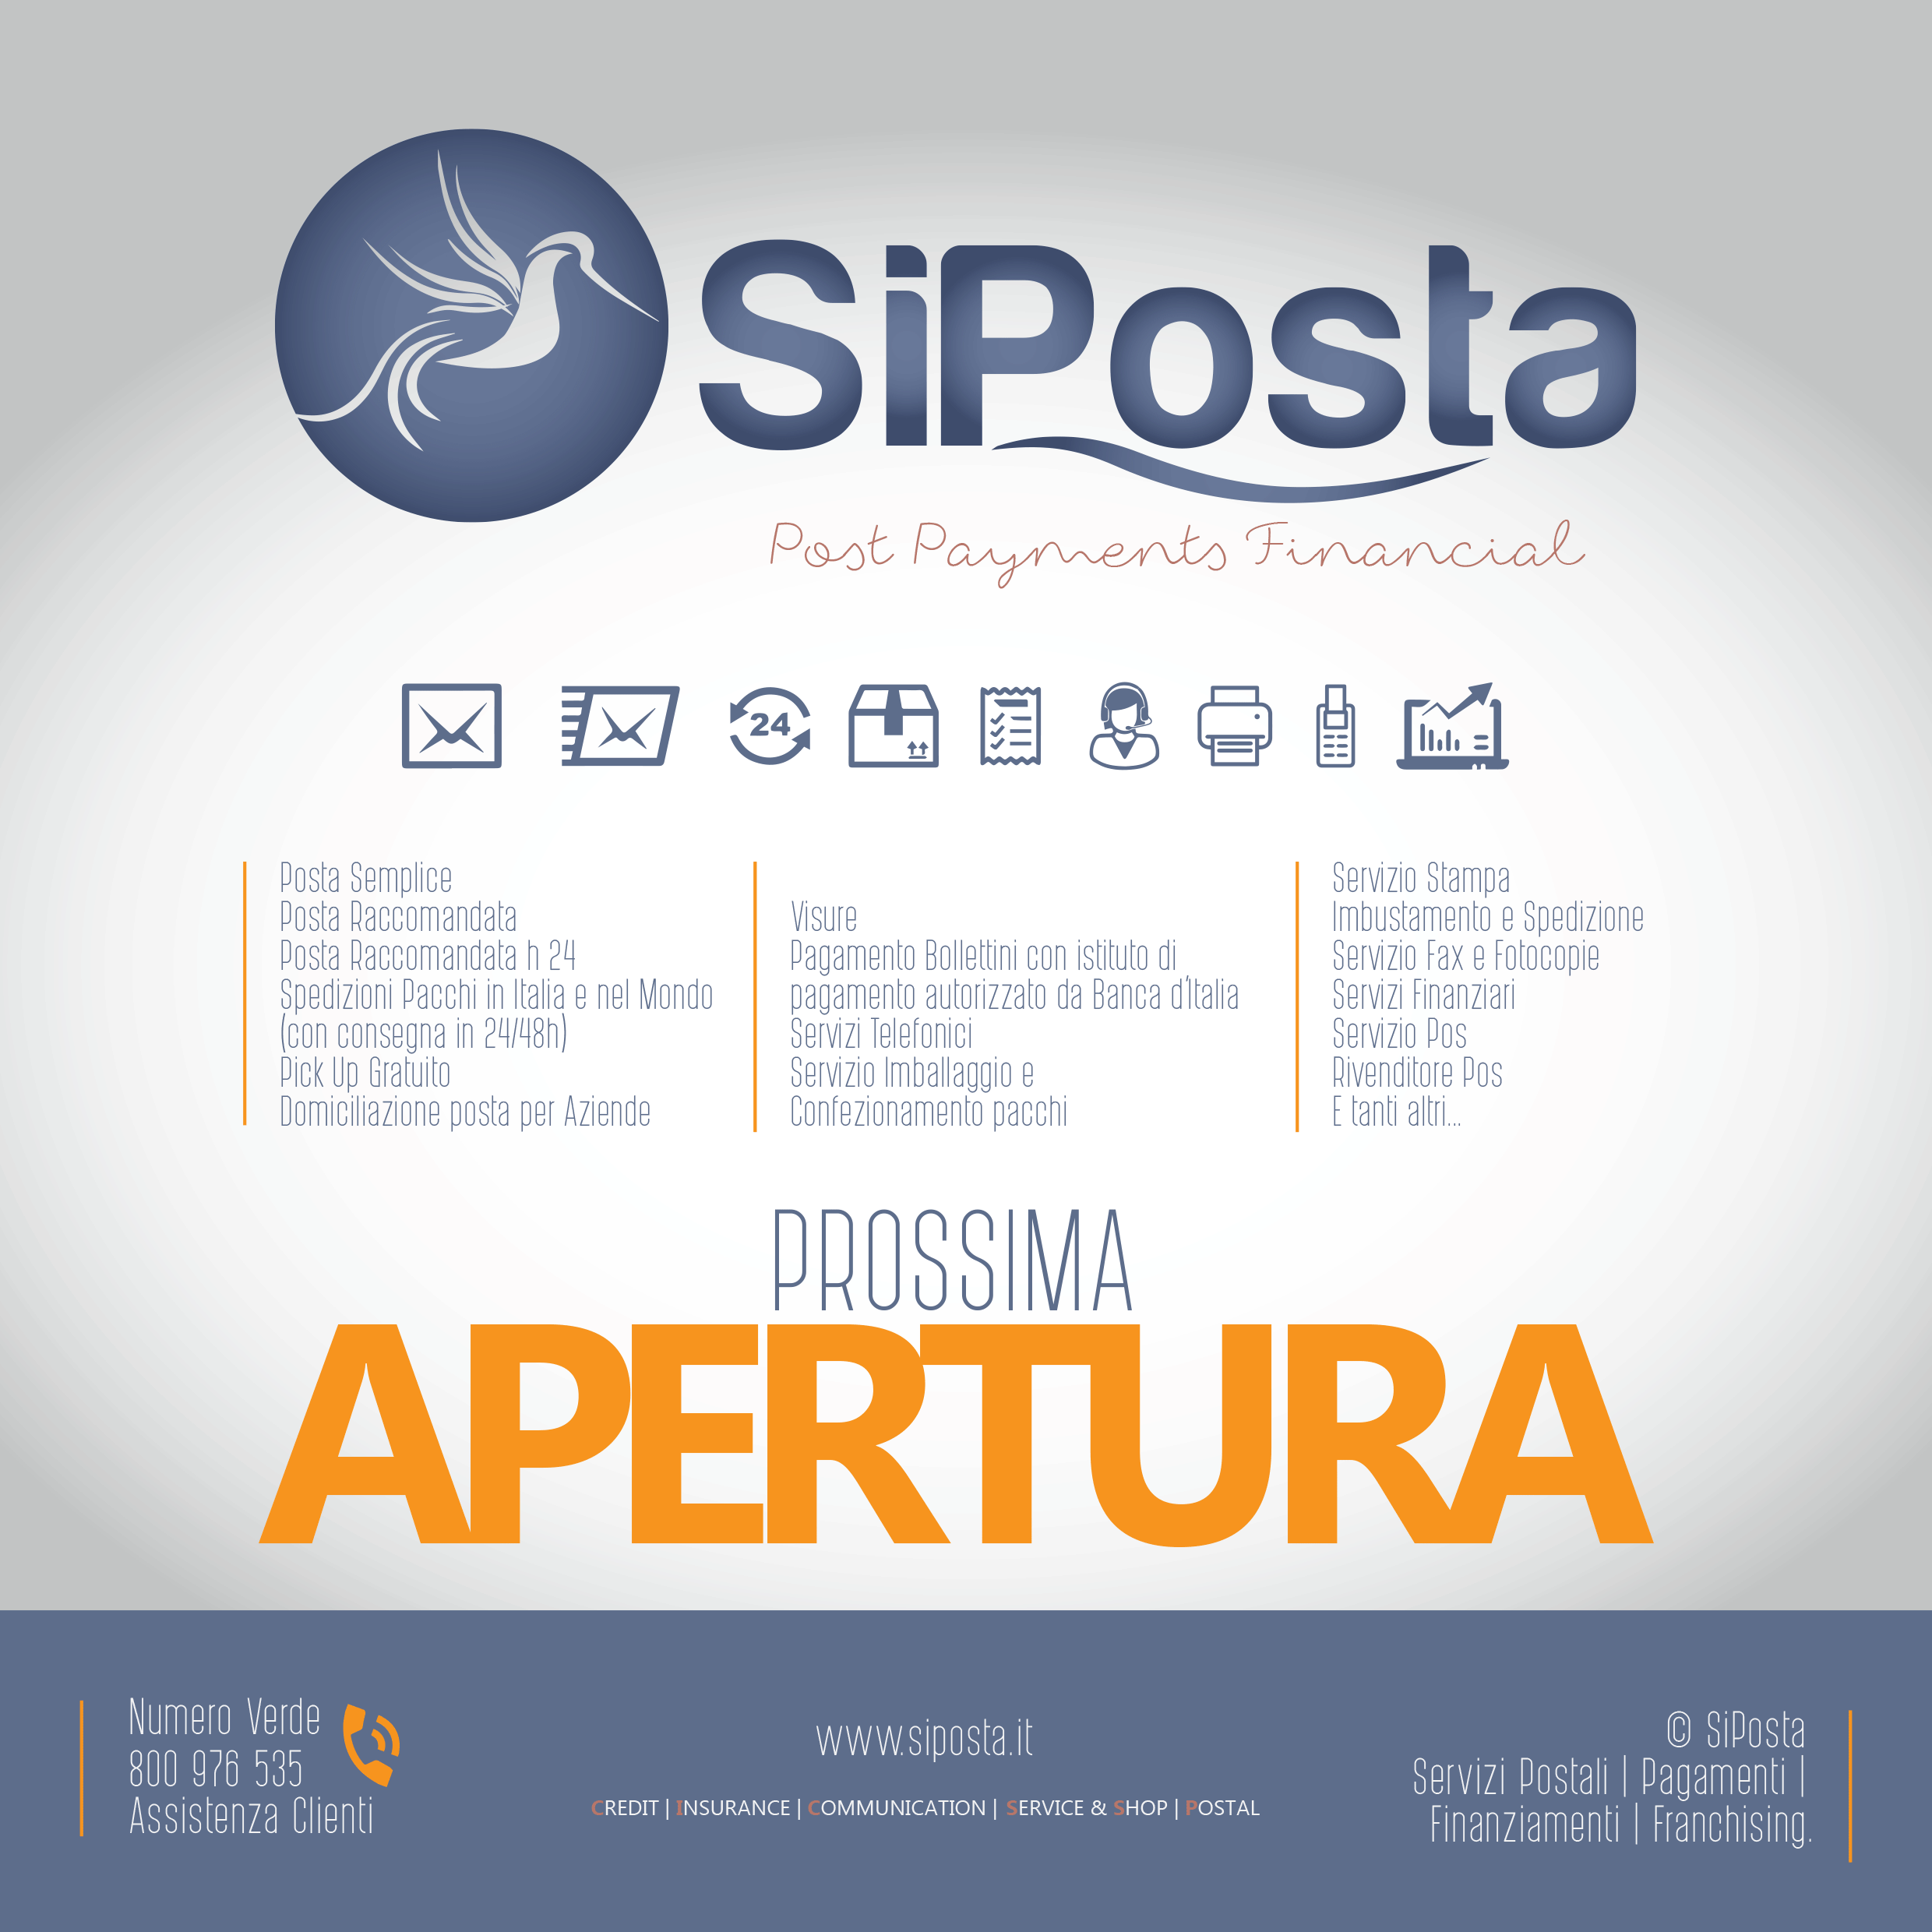 Prossima apertura agenzia SiPosta in Napoli